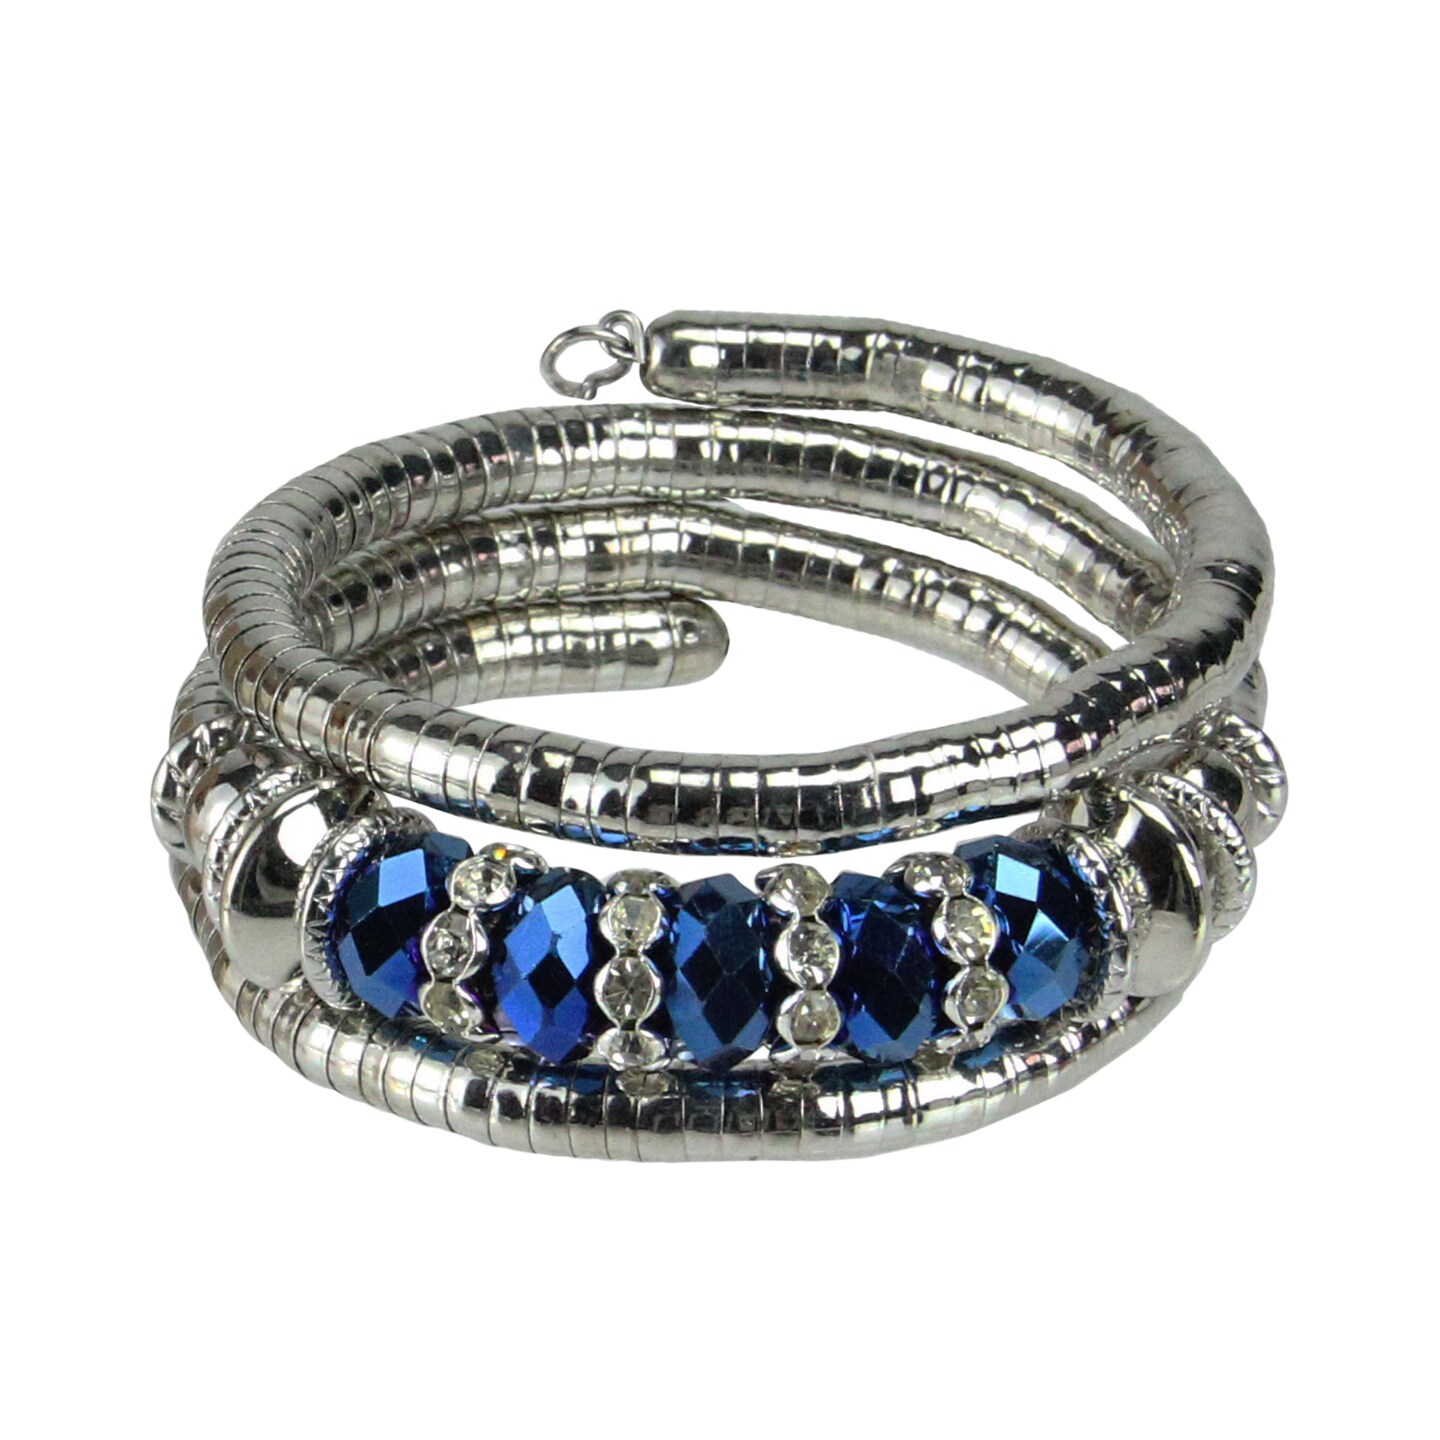 December Diamonds Silvertone Blue Fashion Jewelry Stretch Adjustable Snake Bracelet